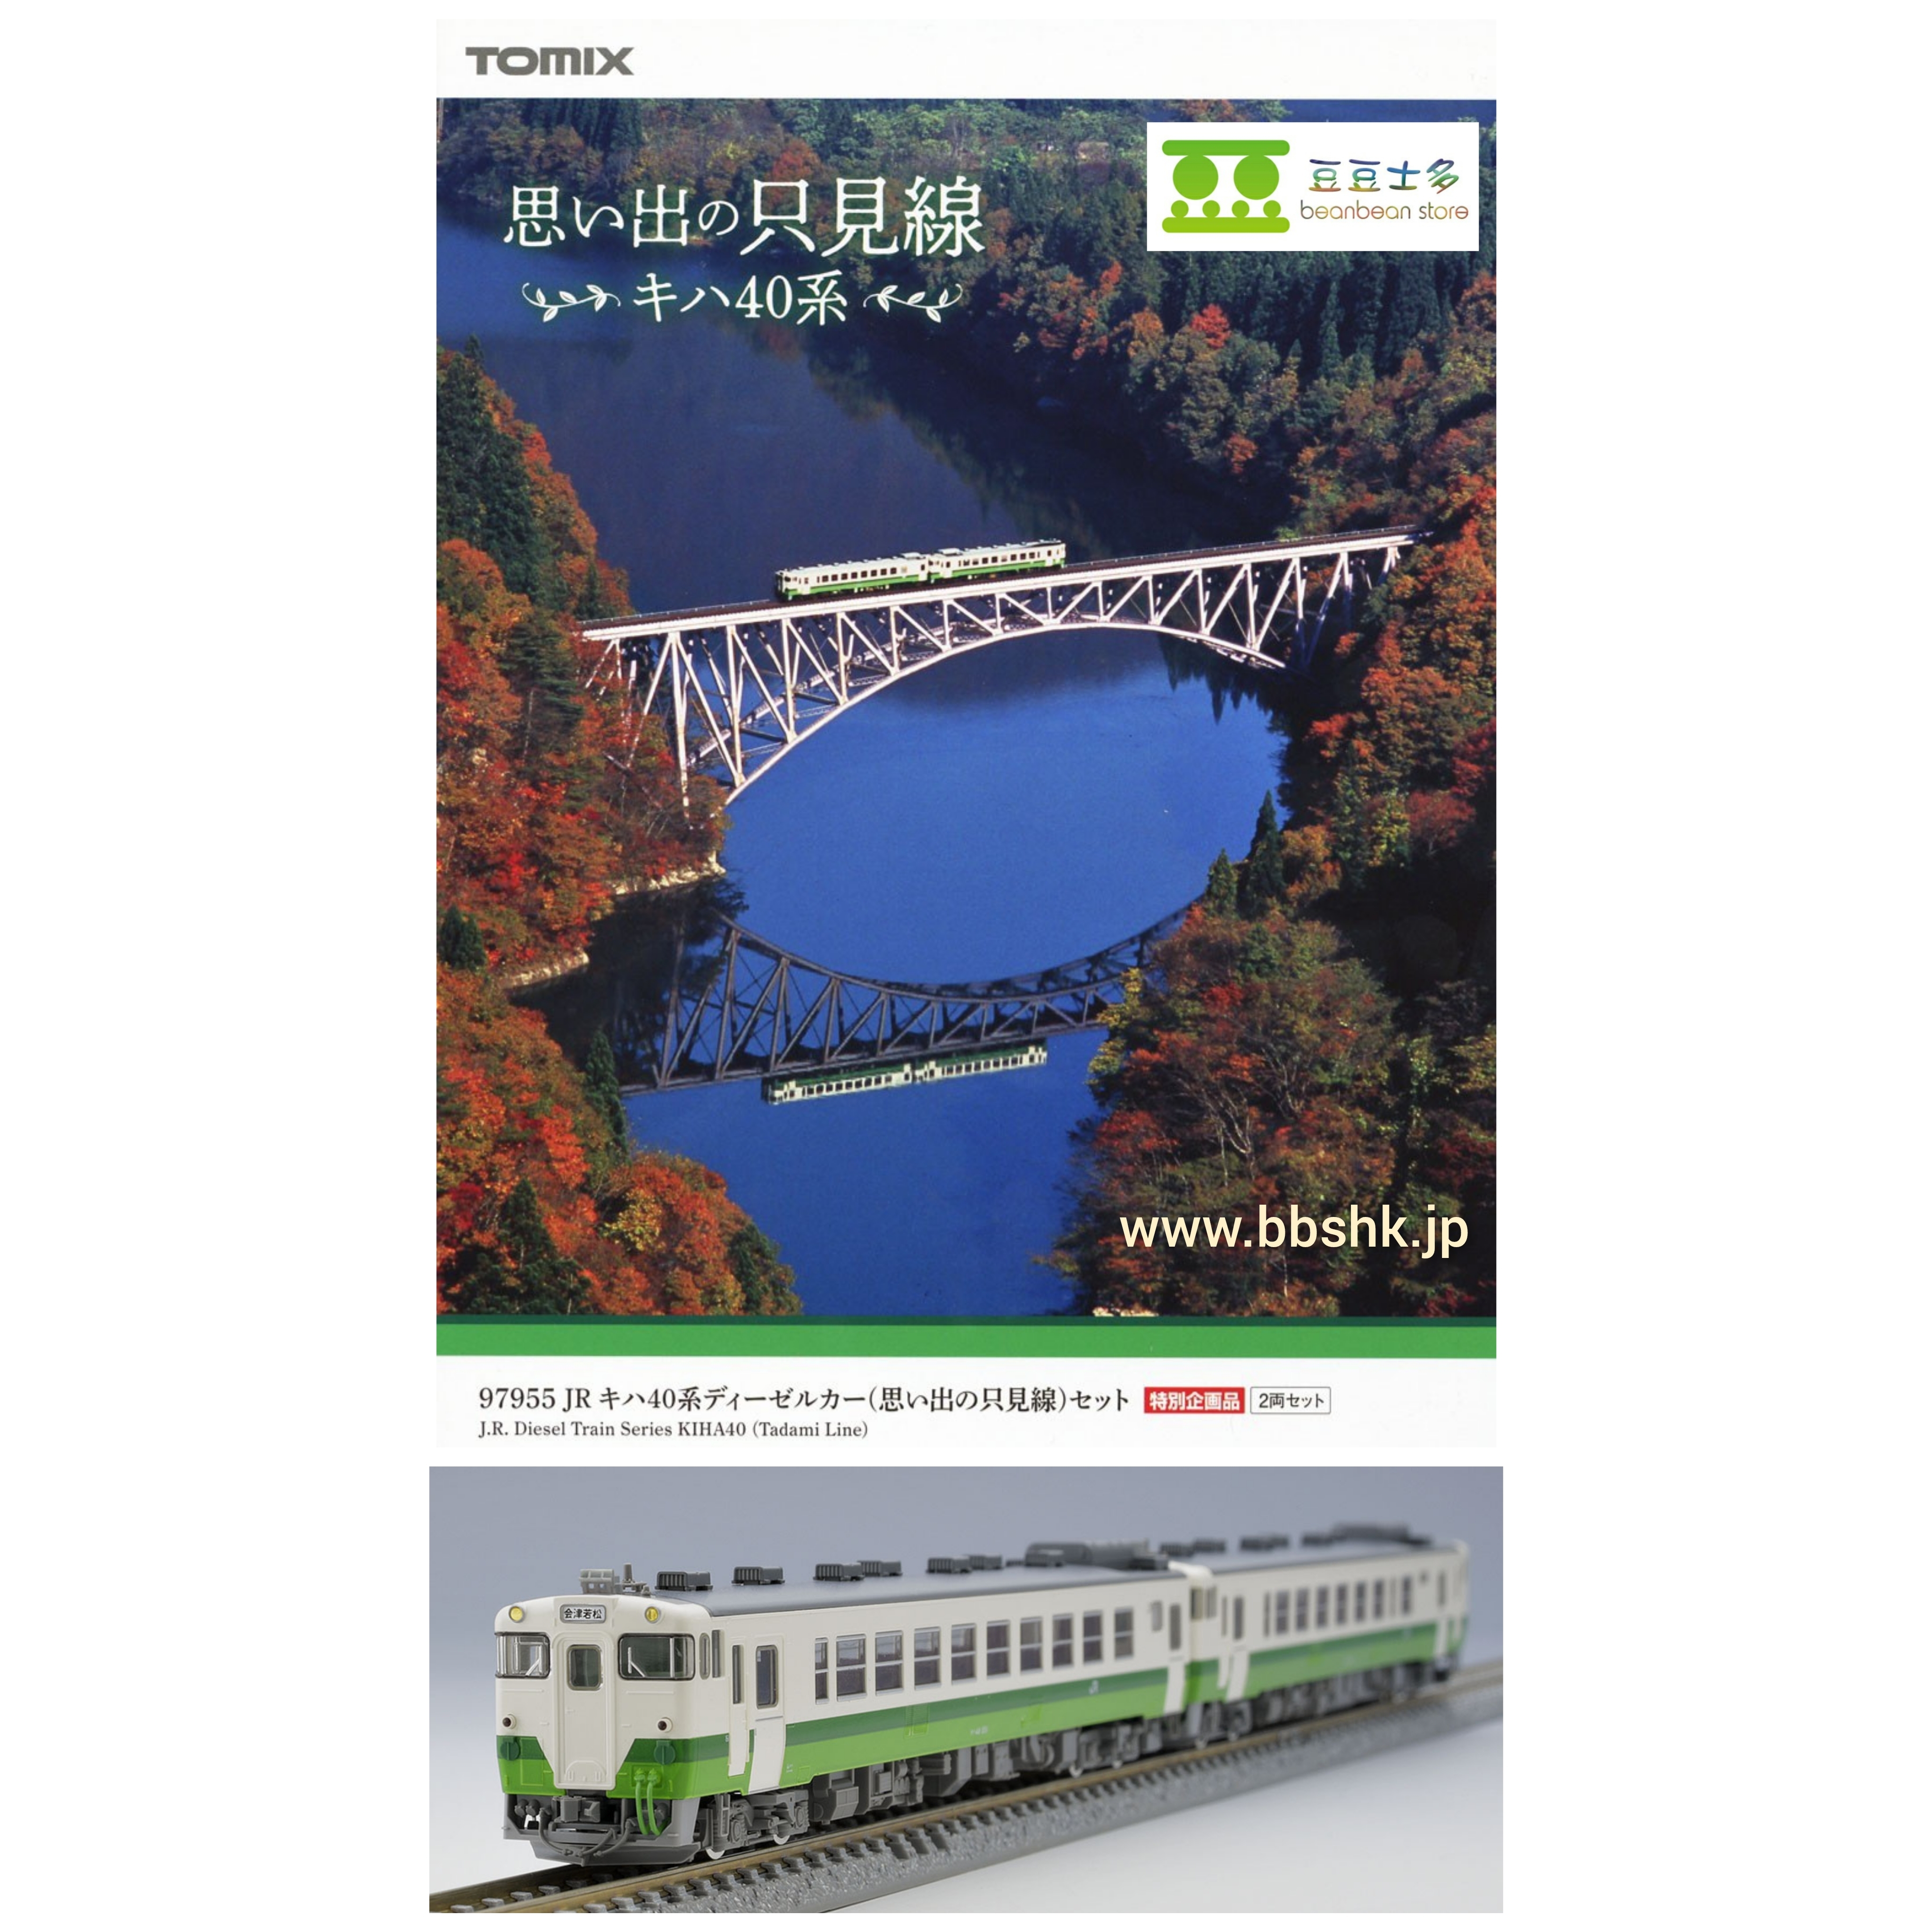 特別企画品 TOMIX 97955 JR キハ40系 思い出の只見線 - 鉄道模型